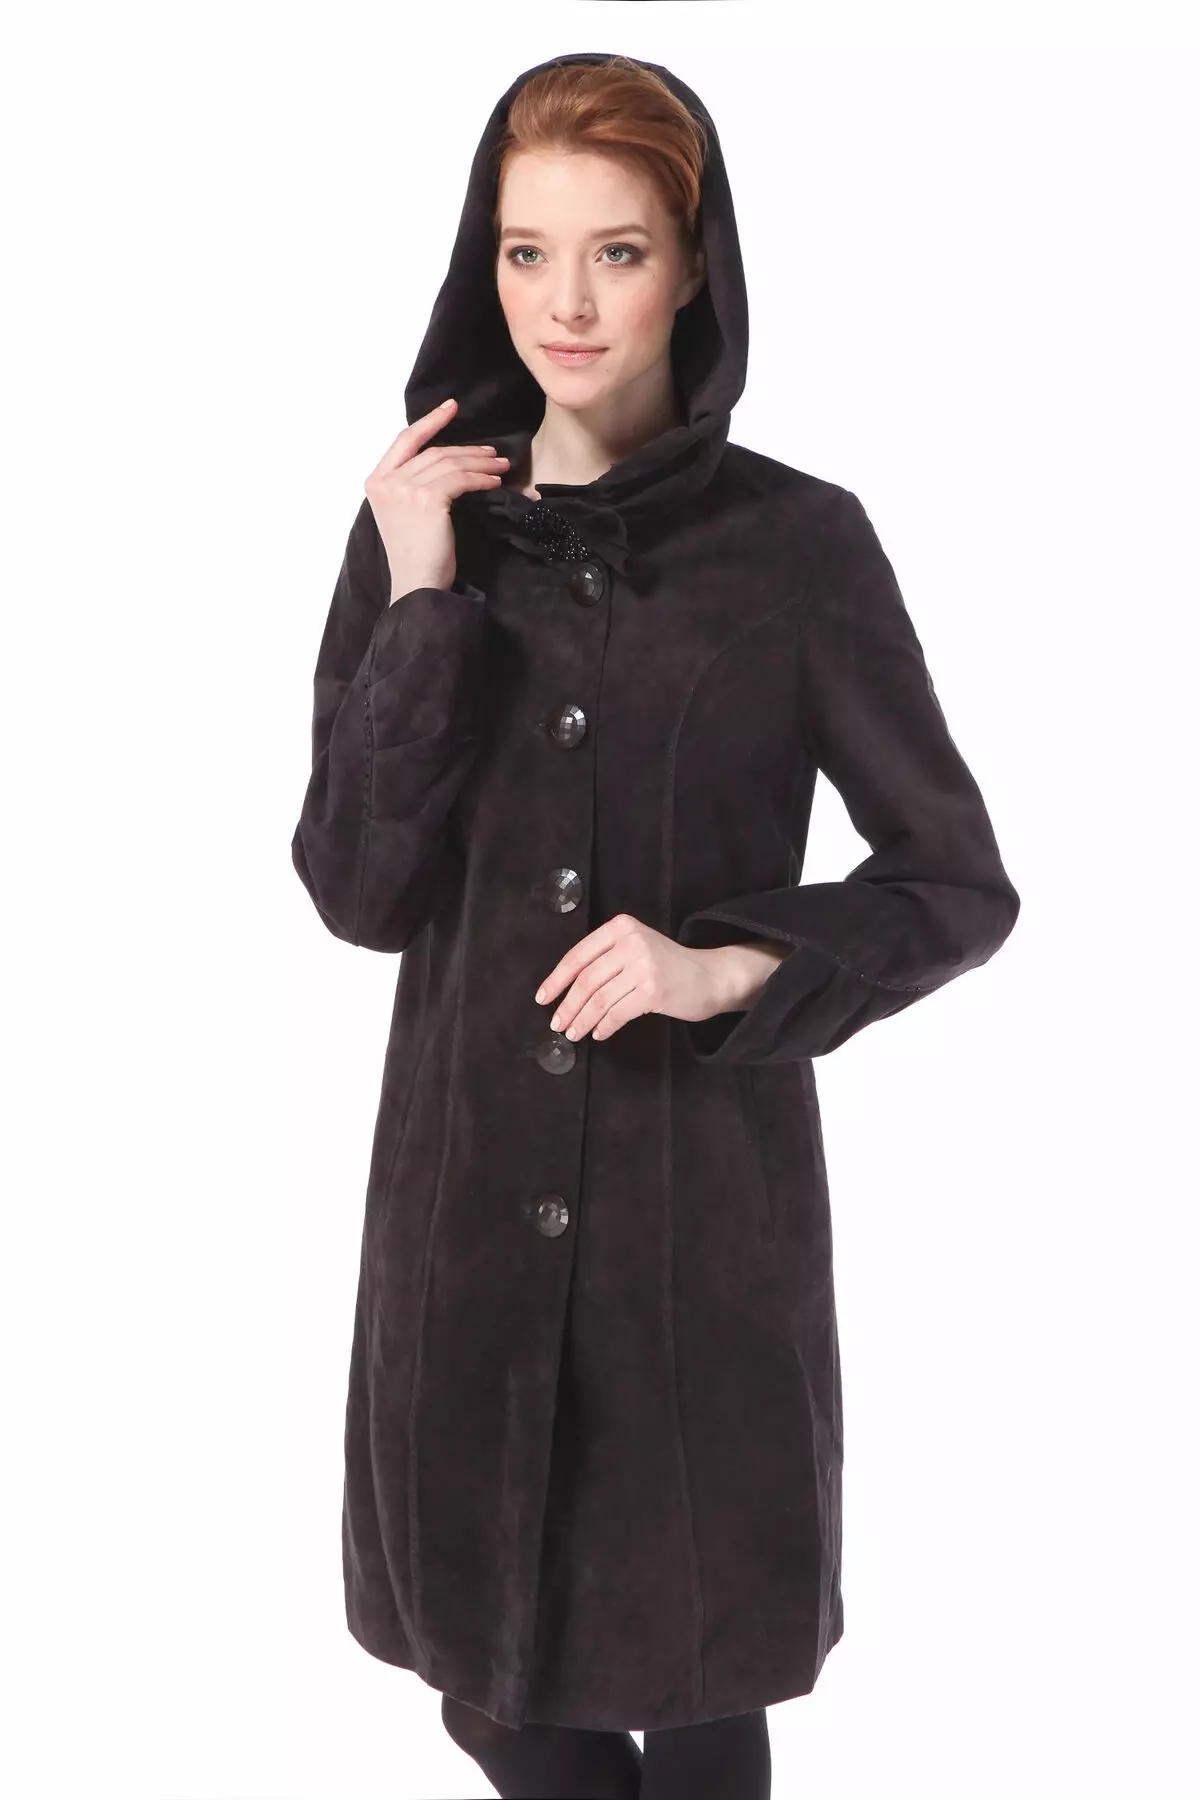 Θηλυκό δερμάτινο παλτό (130 φωτογραφίες): μονωμένο, με δερμάτινα ένθετα, σακάκι παλτό, με αυτό που φοράει, με κουκούλα, καπιτονία, μακρύς 539_64